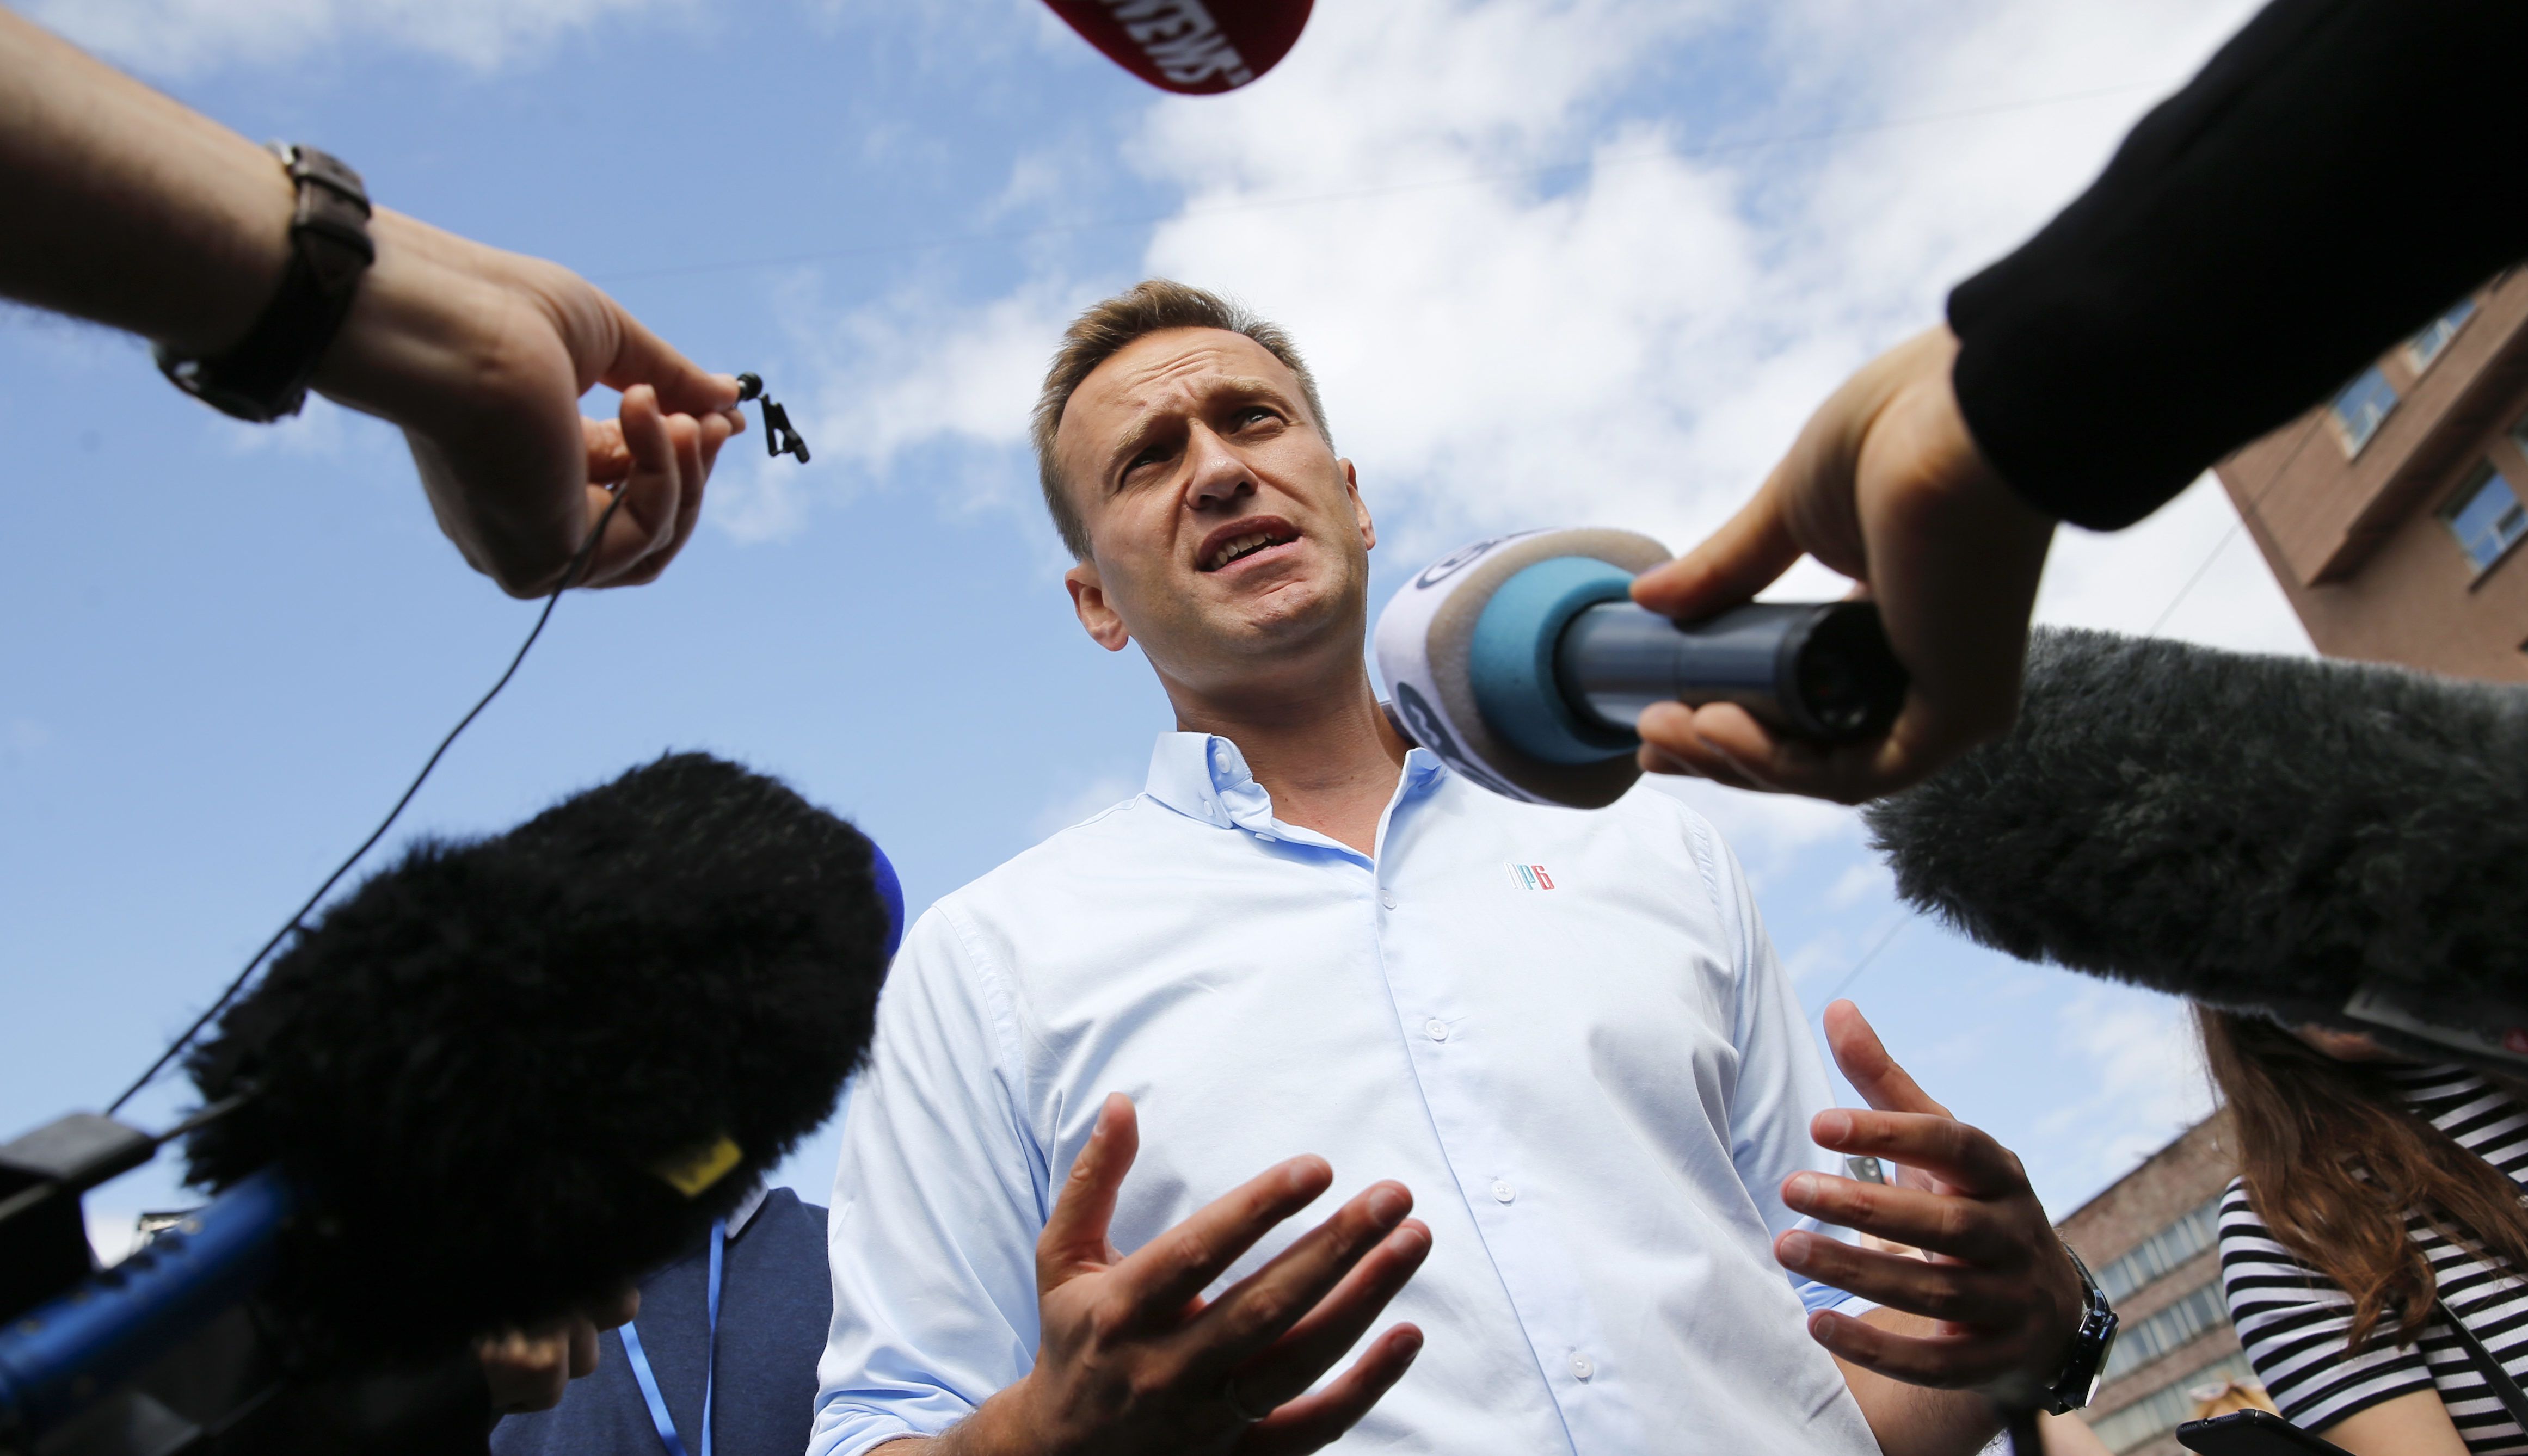 Kiderült, hogyan mérgezhették meg Navalnijt